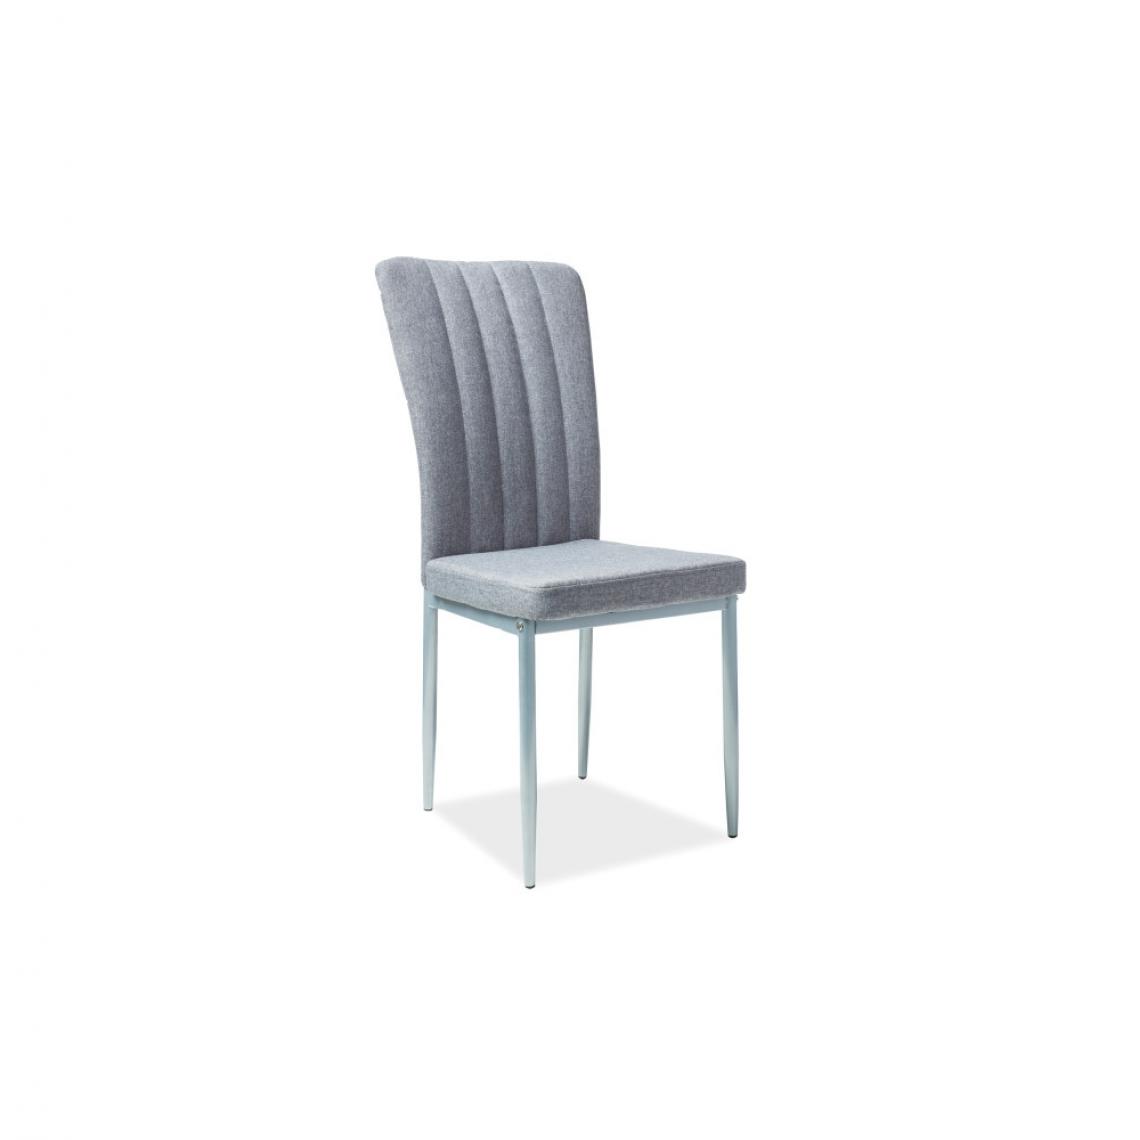 Ac-Deco - Chaise en tissu - H733 - 40 x 40 x 96 cm - Pieds en métal et aluminium - Gris - Chaises